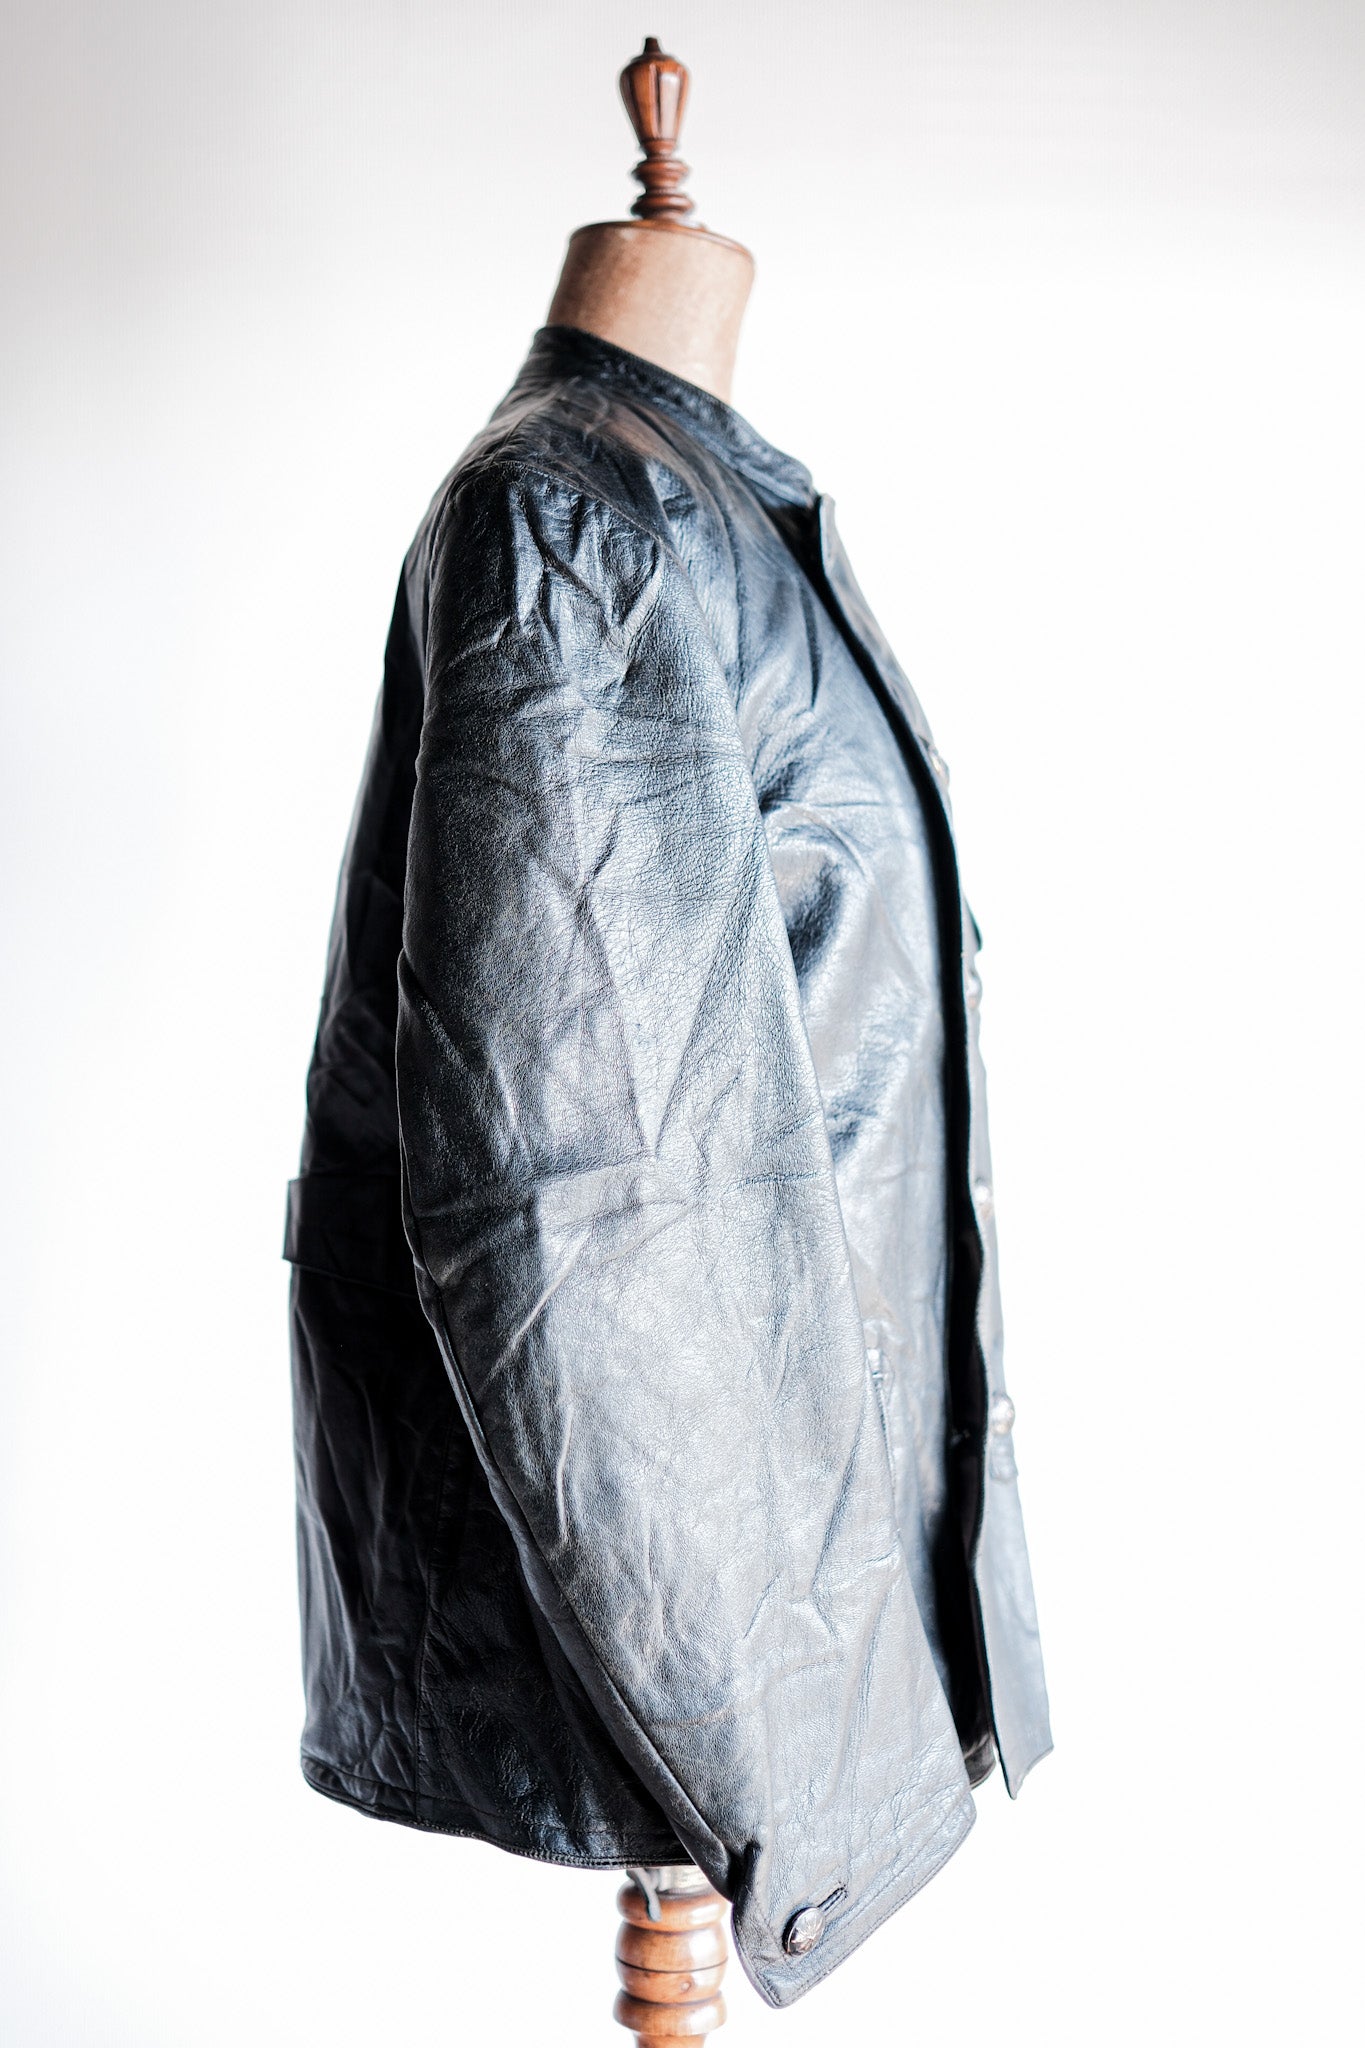 [~ 40 '] 스웨덴 빈티지 더블 가슴 가죽 재킷